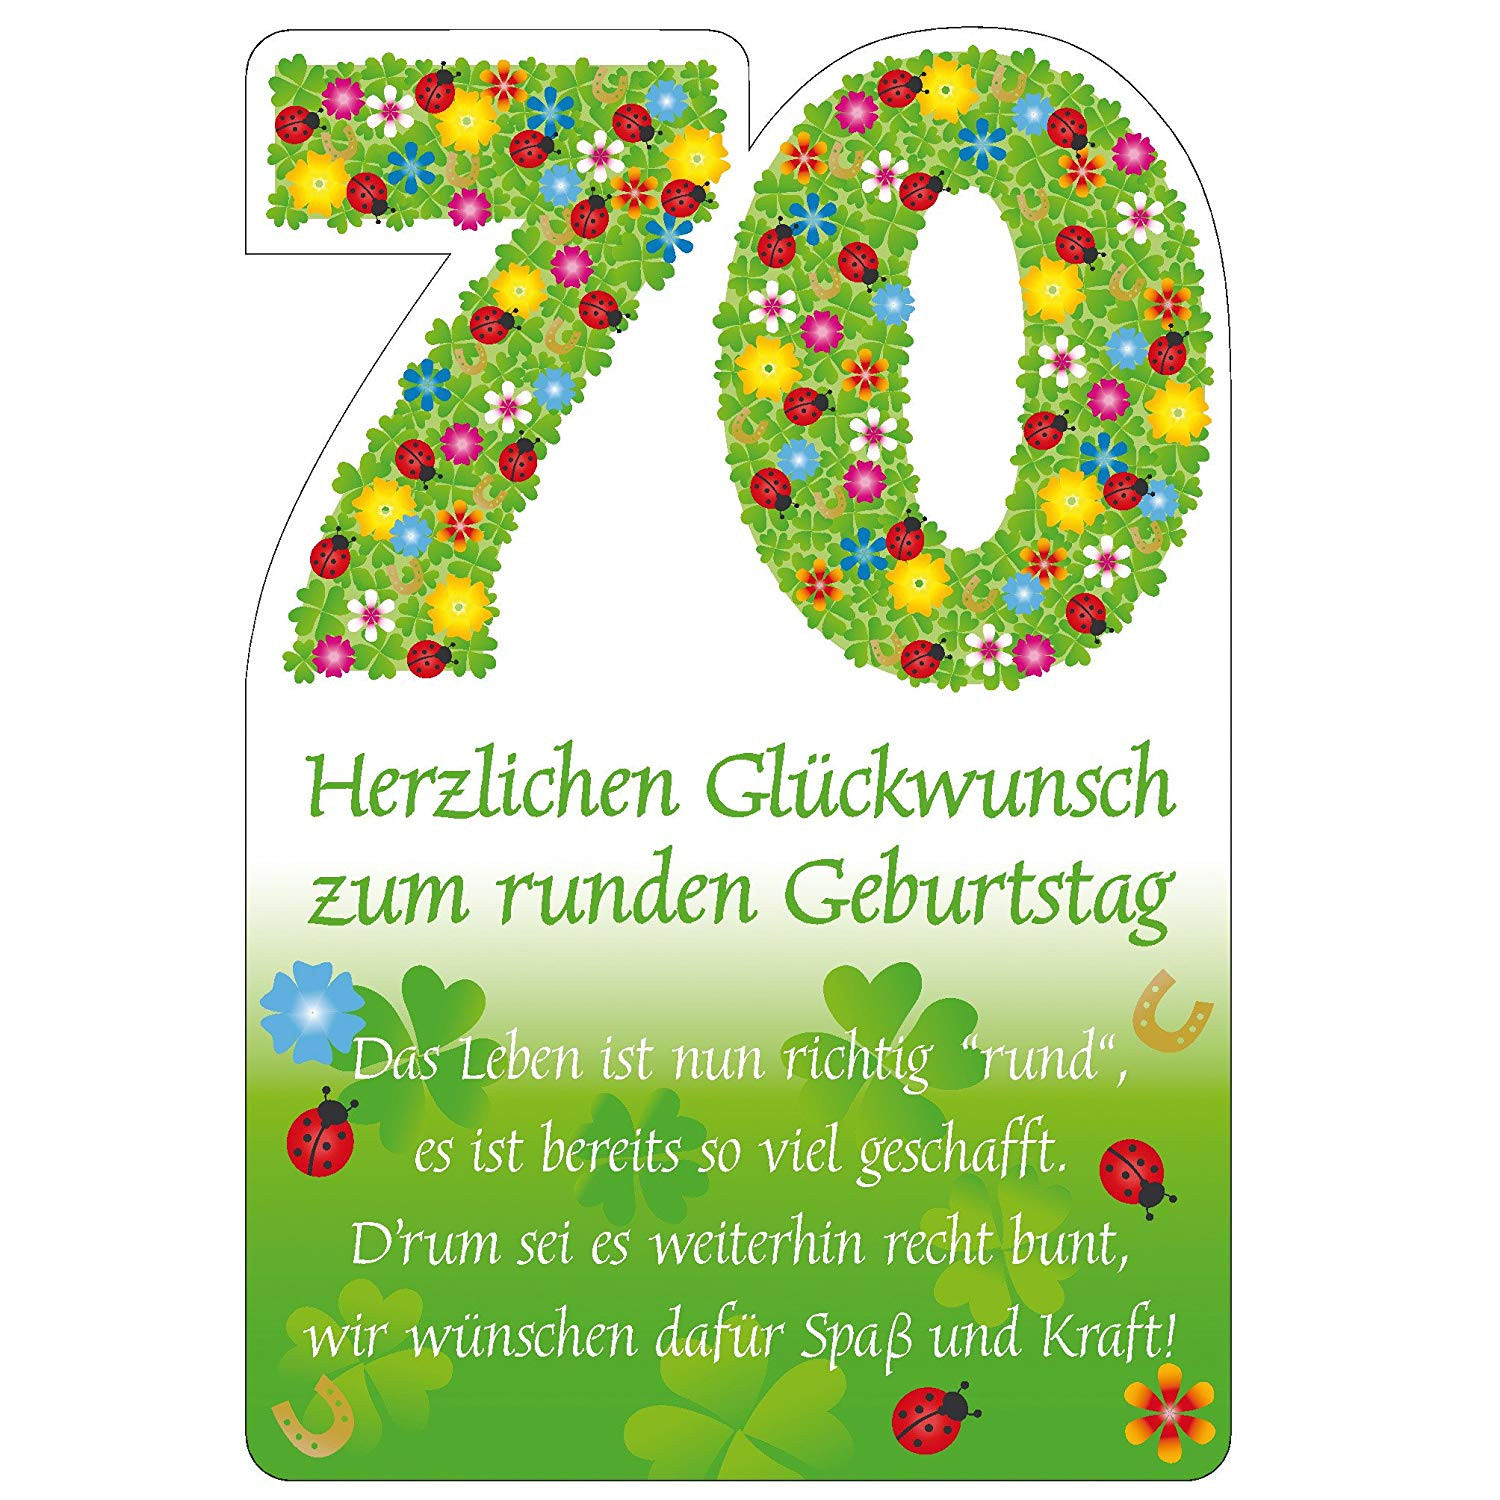 Geburtstagssprüche Zum 70. Geburtstag
 Stop Tinnitus Geburtstagsspruche Runder Geburtstag 70